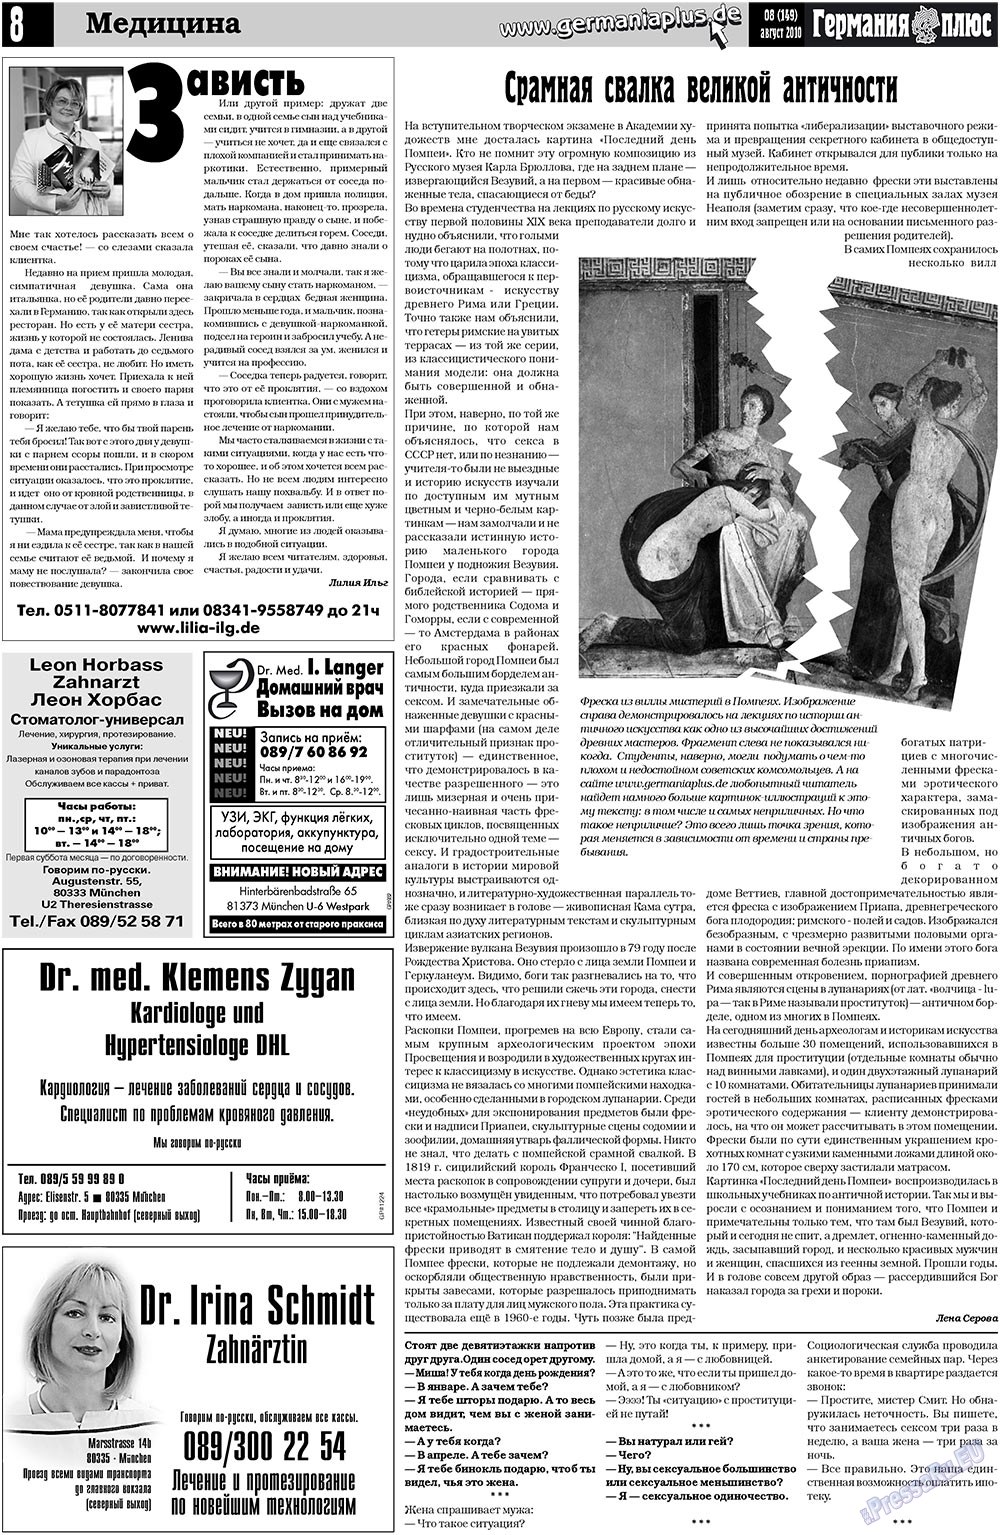 Германия плюс (газета). 2010 год, номер 8, стр. 8